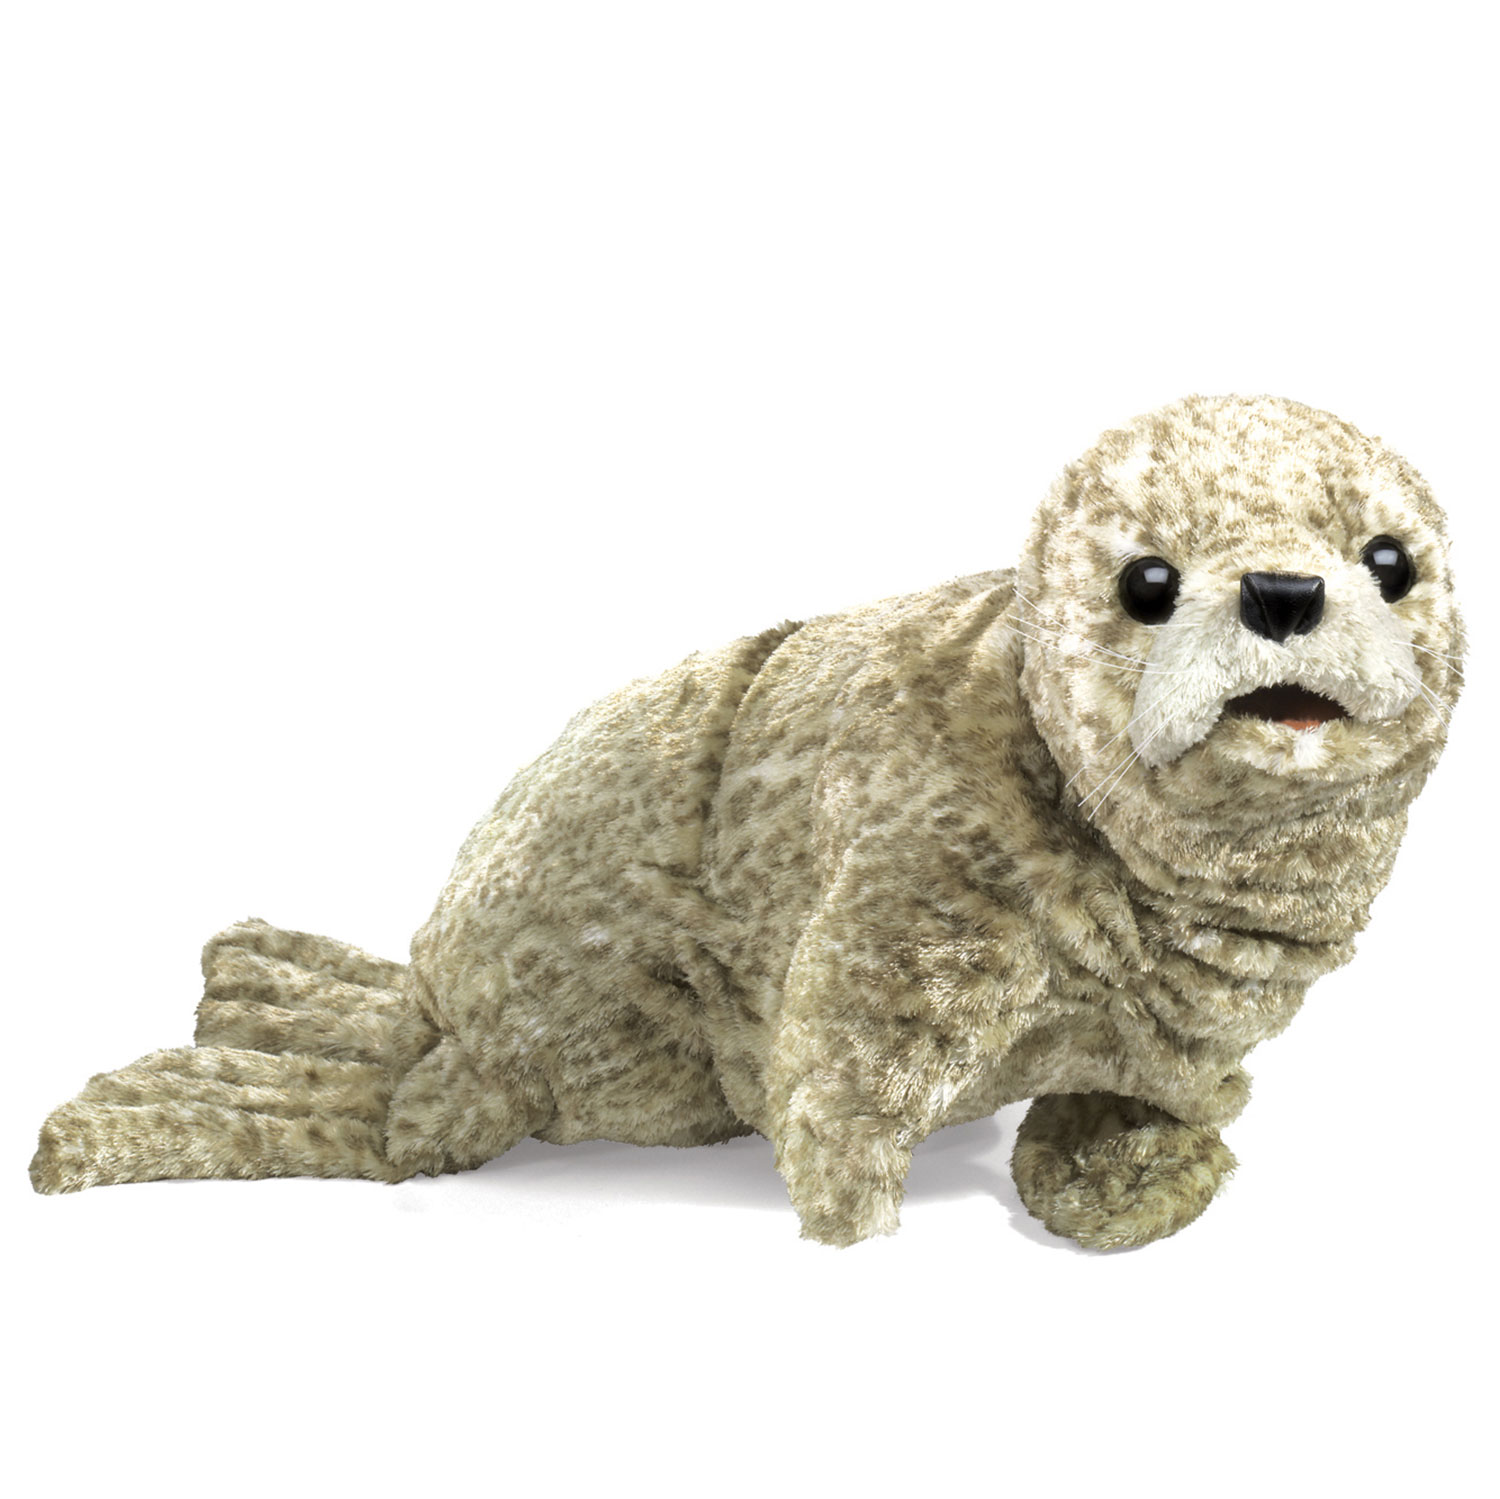 Seerobbenbaby, silber / Harbor Seal